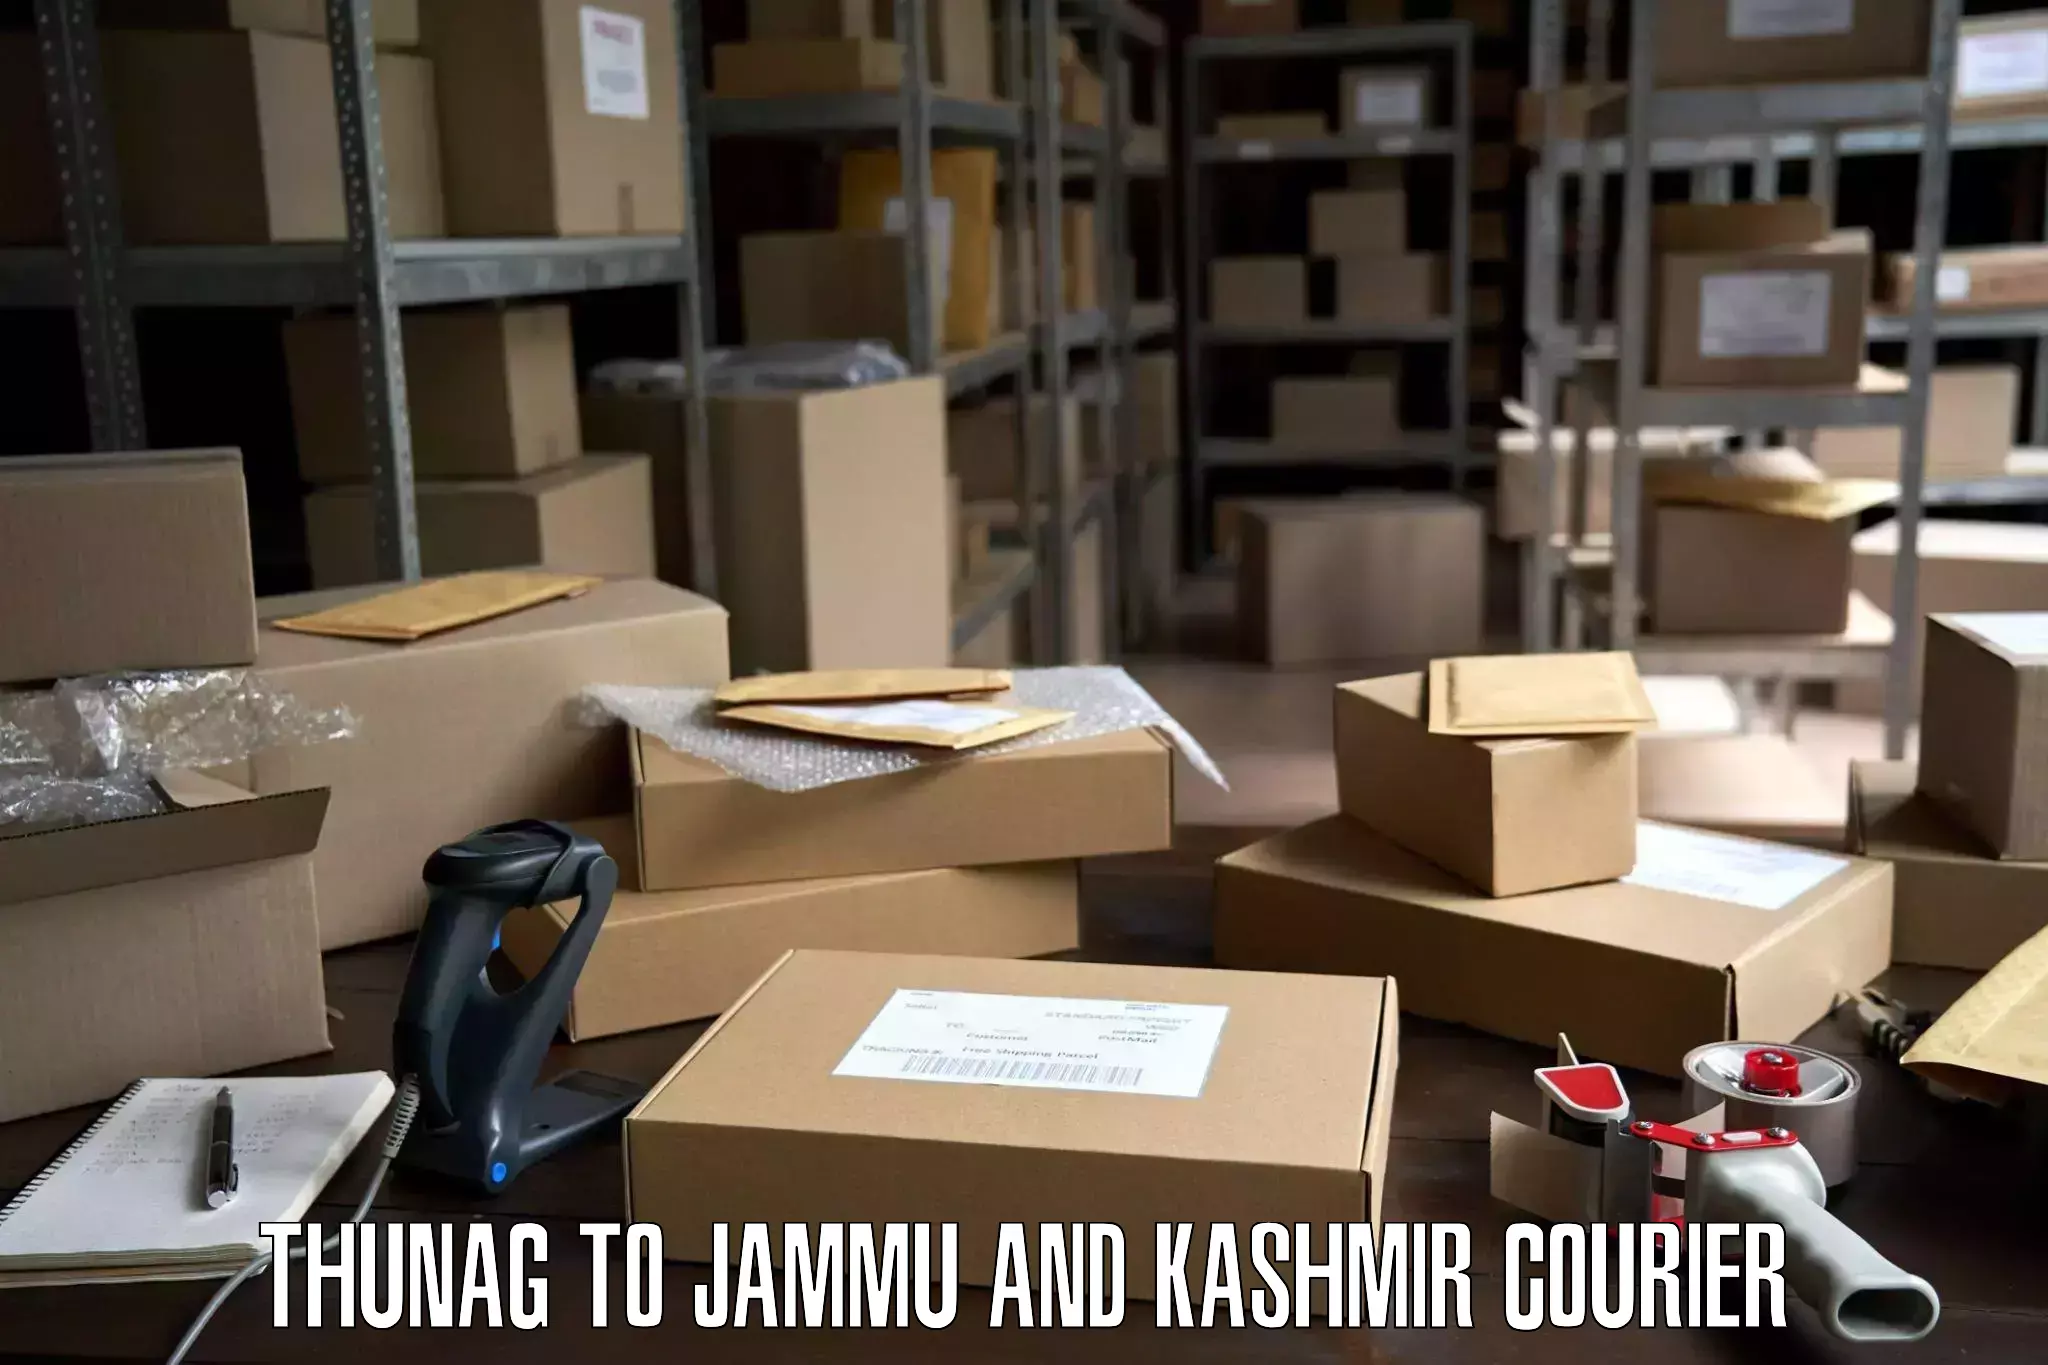 Furniture transport service Thunag to Jammu and Kashmir